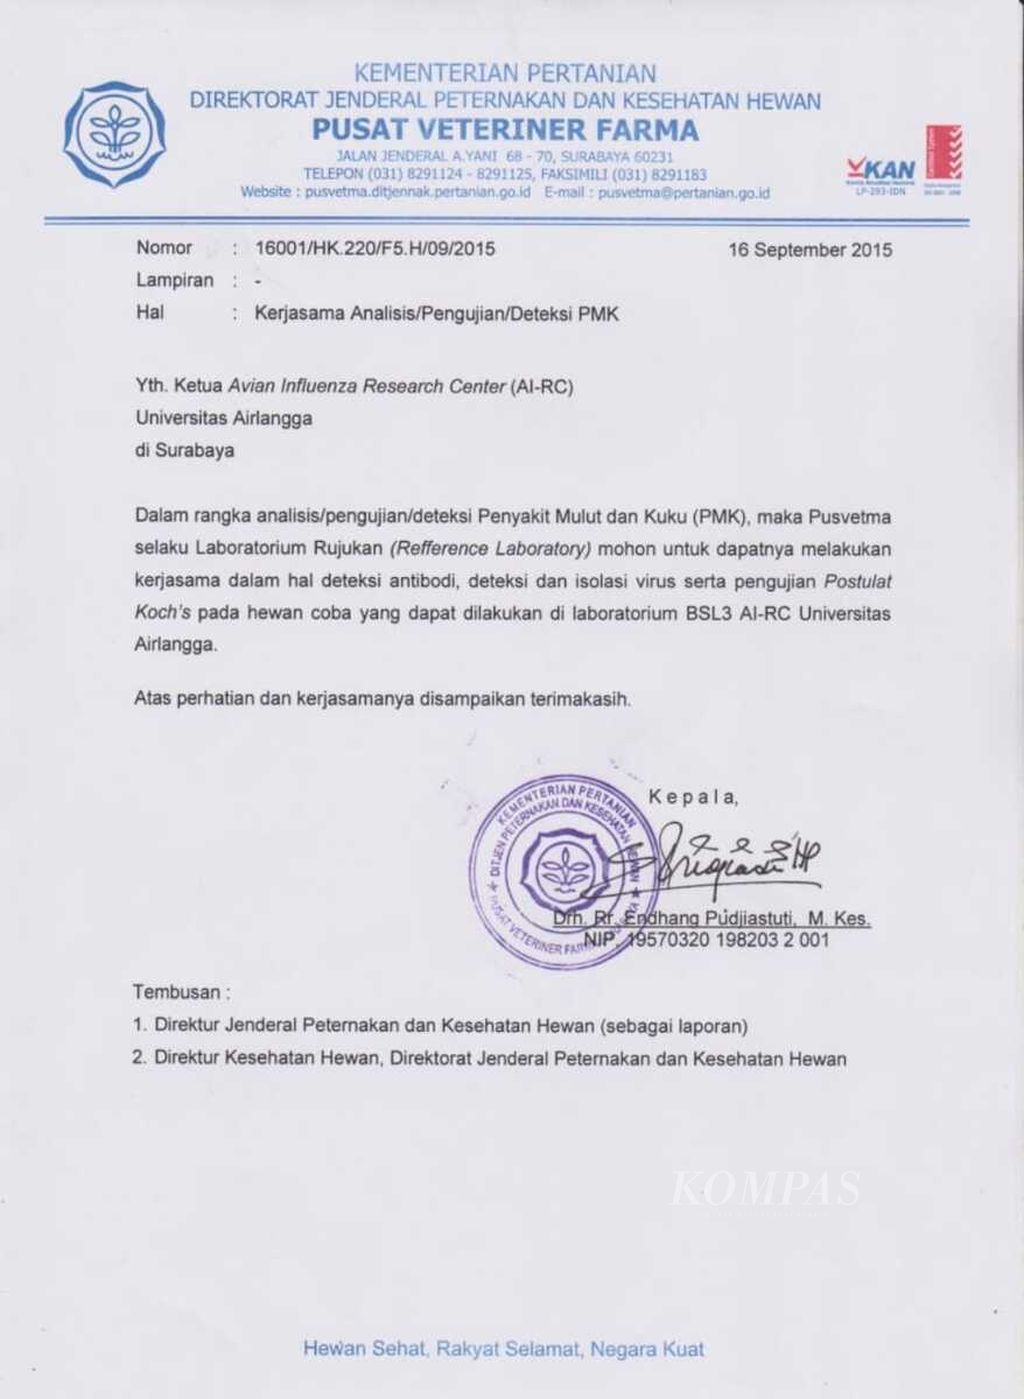 Surat dari Pusat Veteriner Farma (Pusvetma) Surabaya ke pengelola Avian Influenza Research Center (AI-RC) Universitas Airlangga terkait kerjasama pengujian penyakit mulut dan kuku (PMK) 15 September 2015. Pengujian di lakukan di AI-RC Universitas Airlangga, karena tempat ini memiliki laboratorium dengan standar keamanan level 3 atau BSL-3. Sumber dokumen dari AI-RC Universitas Airlangga.